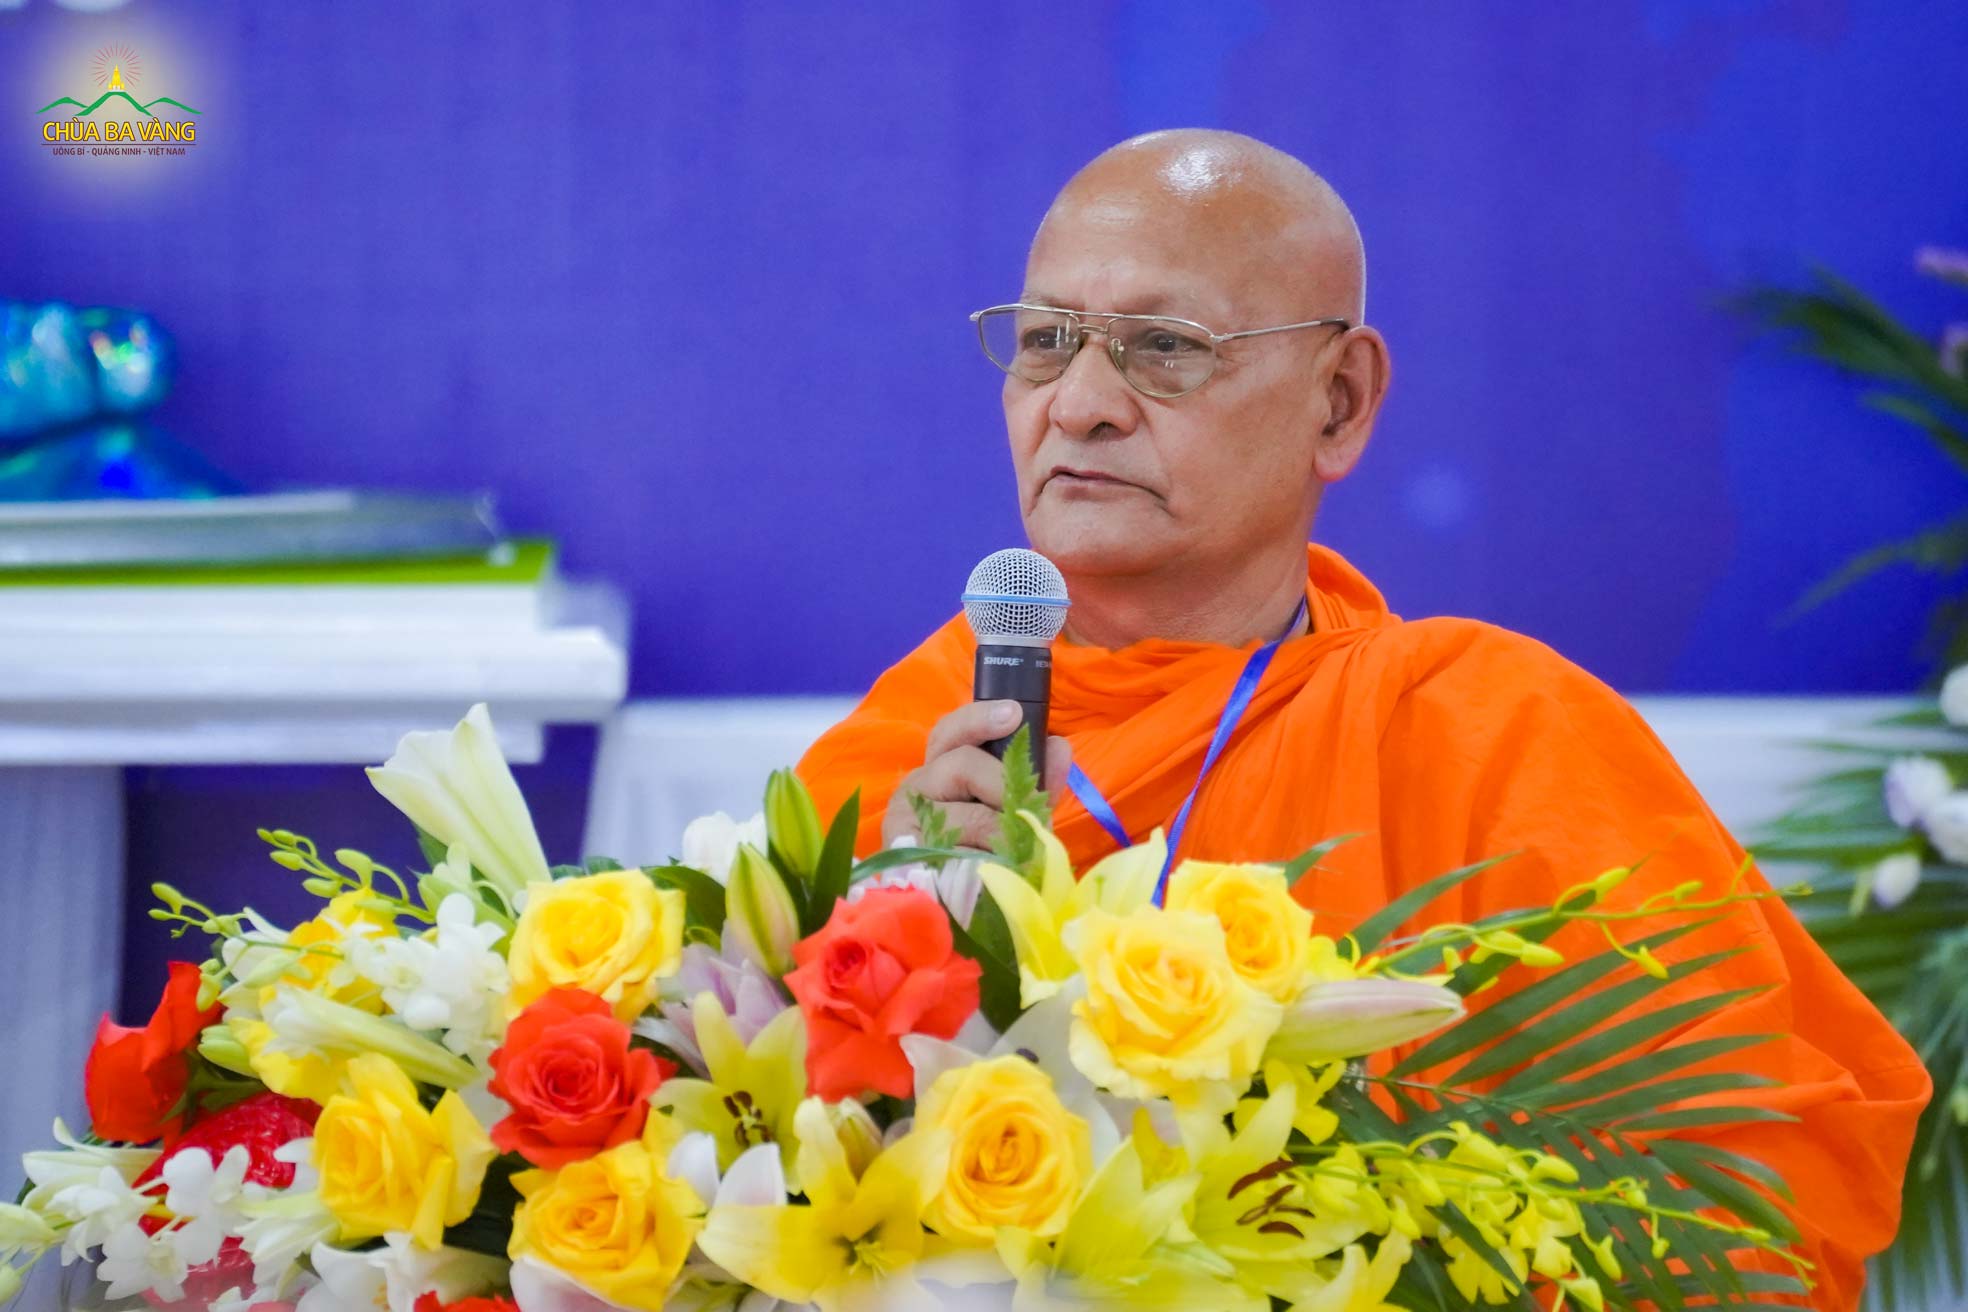 Hòa thượng Dhammasobhana Mahasthavir - Chủ tịch Hội đồng Trị sự TW Phật giáo Nepal phát biểu tại chương trình